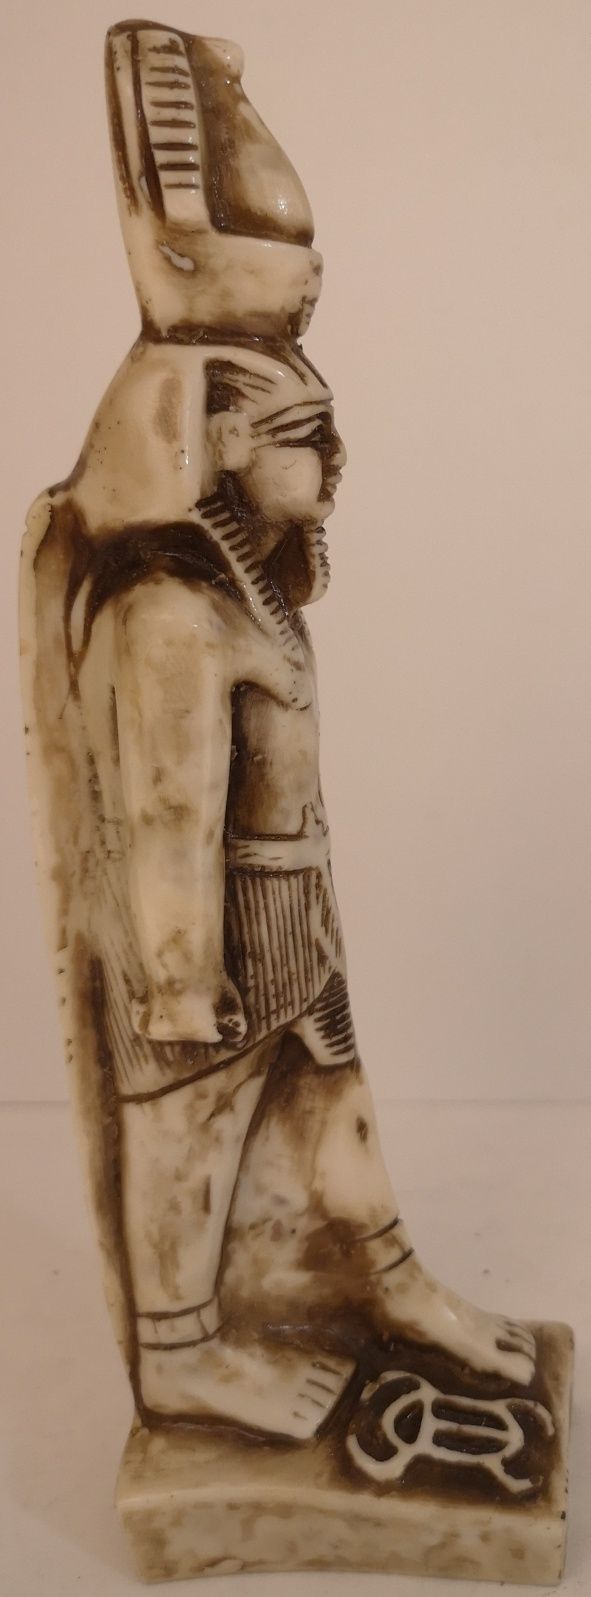 Figurka idacego faraona